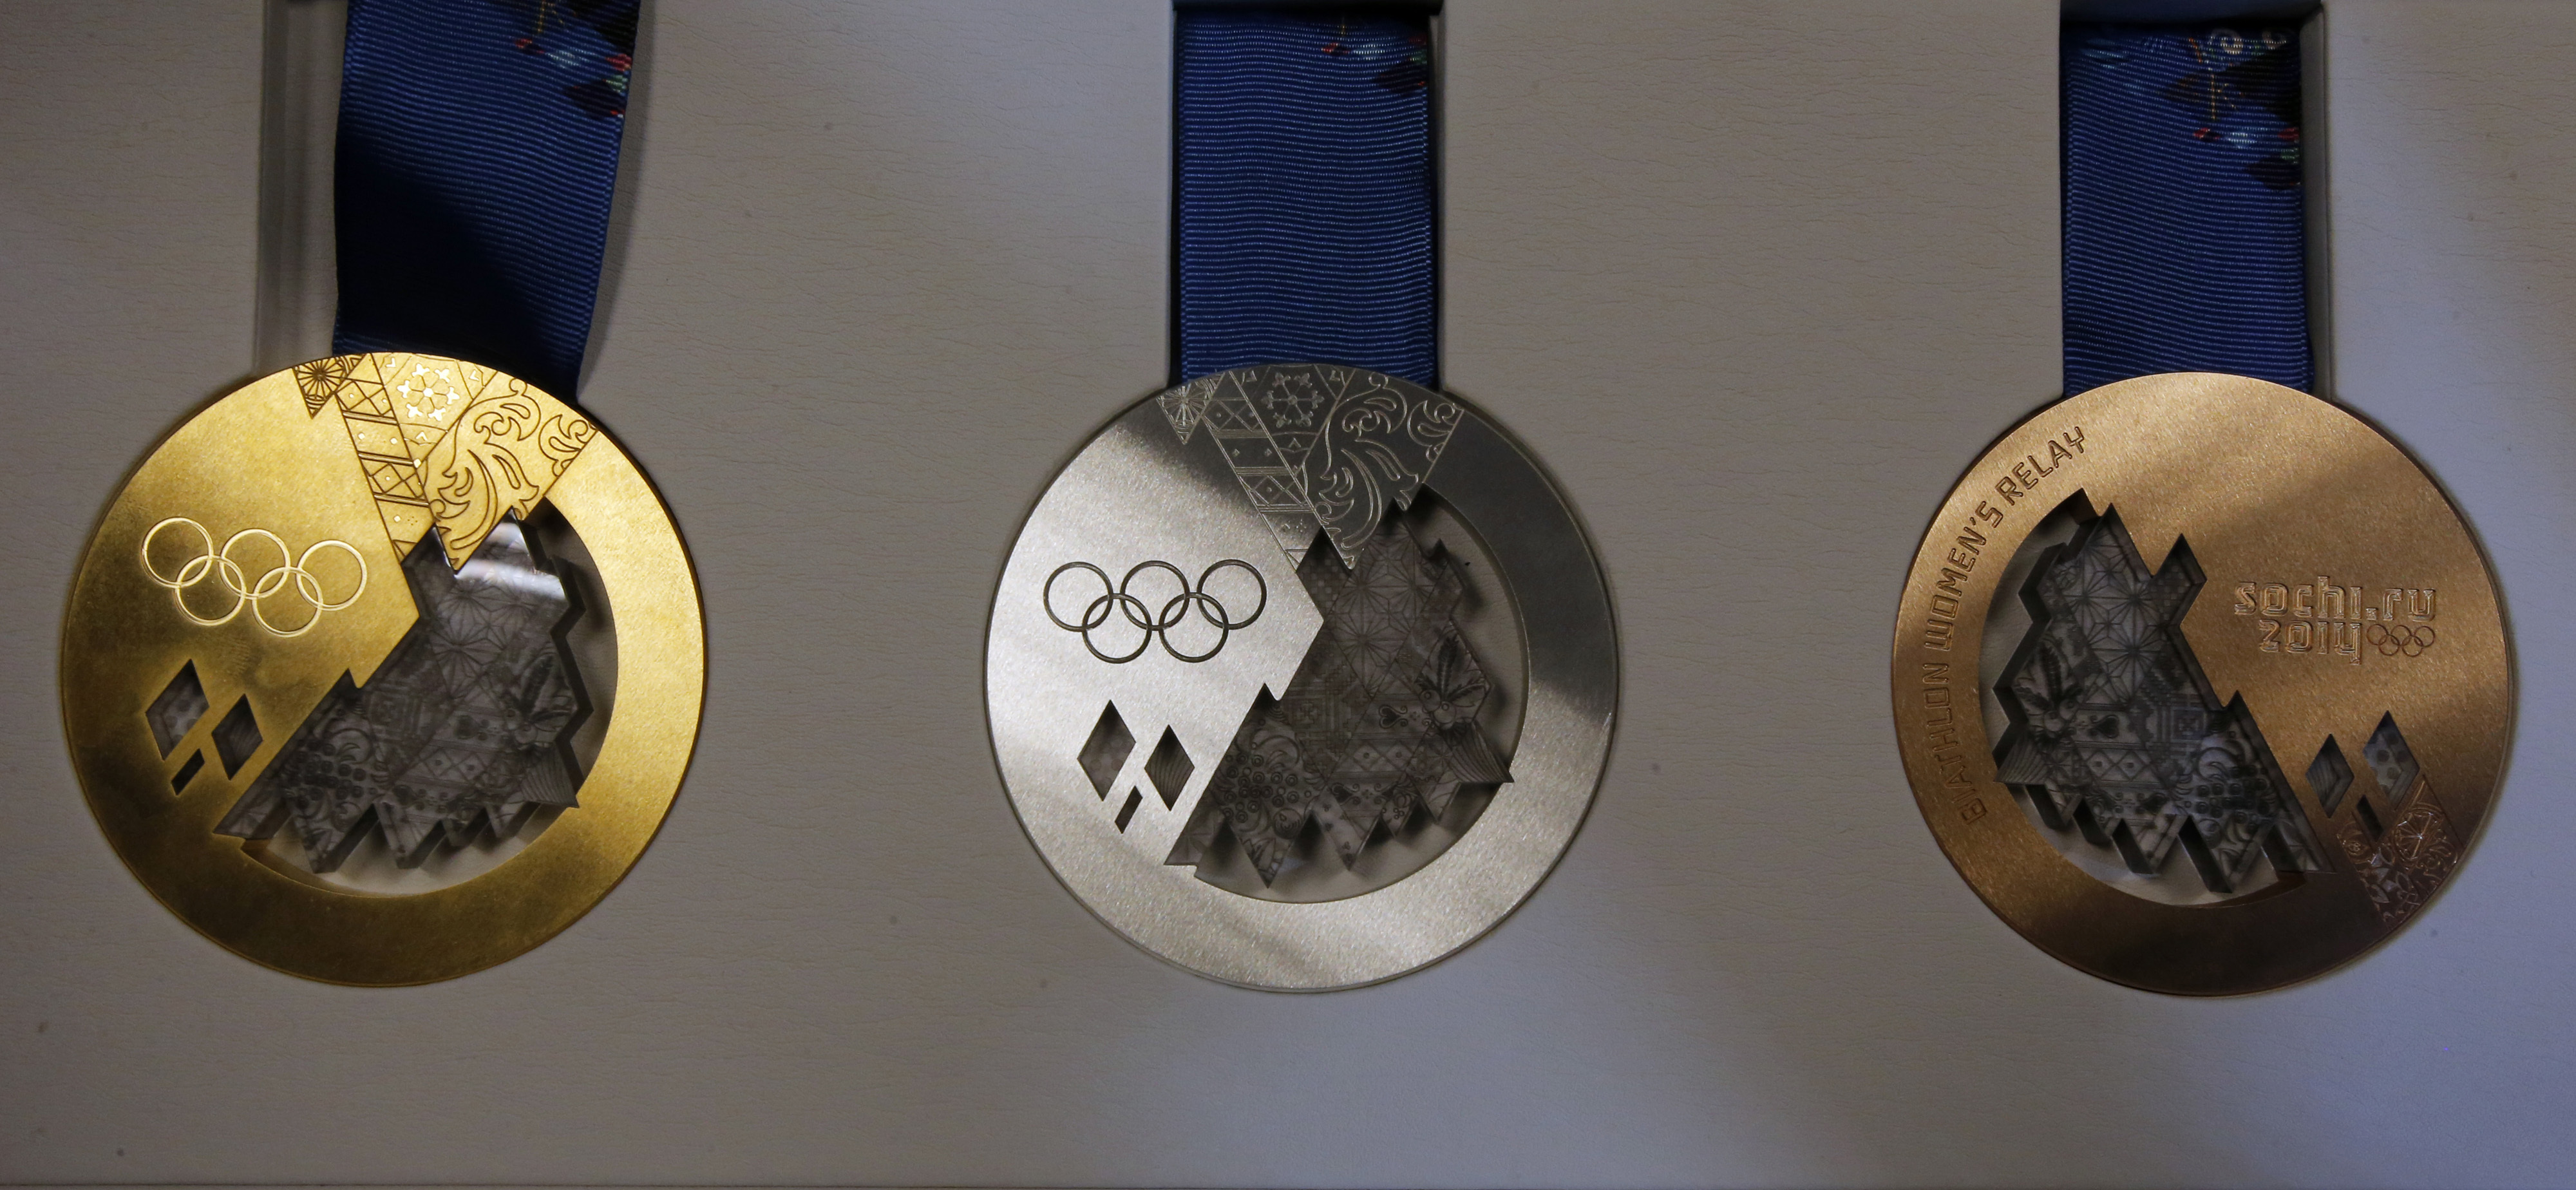 Олимпийская медаль 2014 года. Олимпийские медали Сочи 2014. Олимпиады 2014 года Сочи медали бронзовая. Олимпийские медали в Пекине 2022. Золотая медаль Олимпийских игр Сочи.